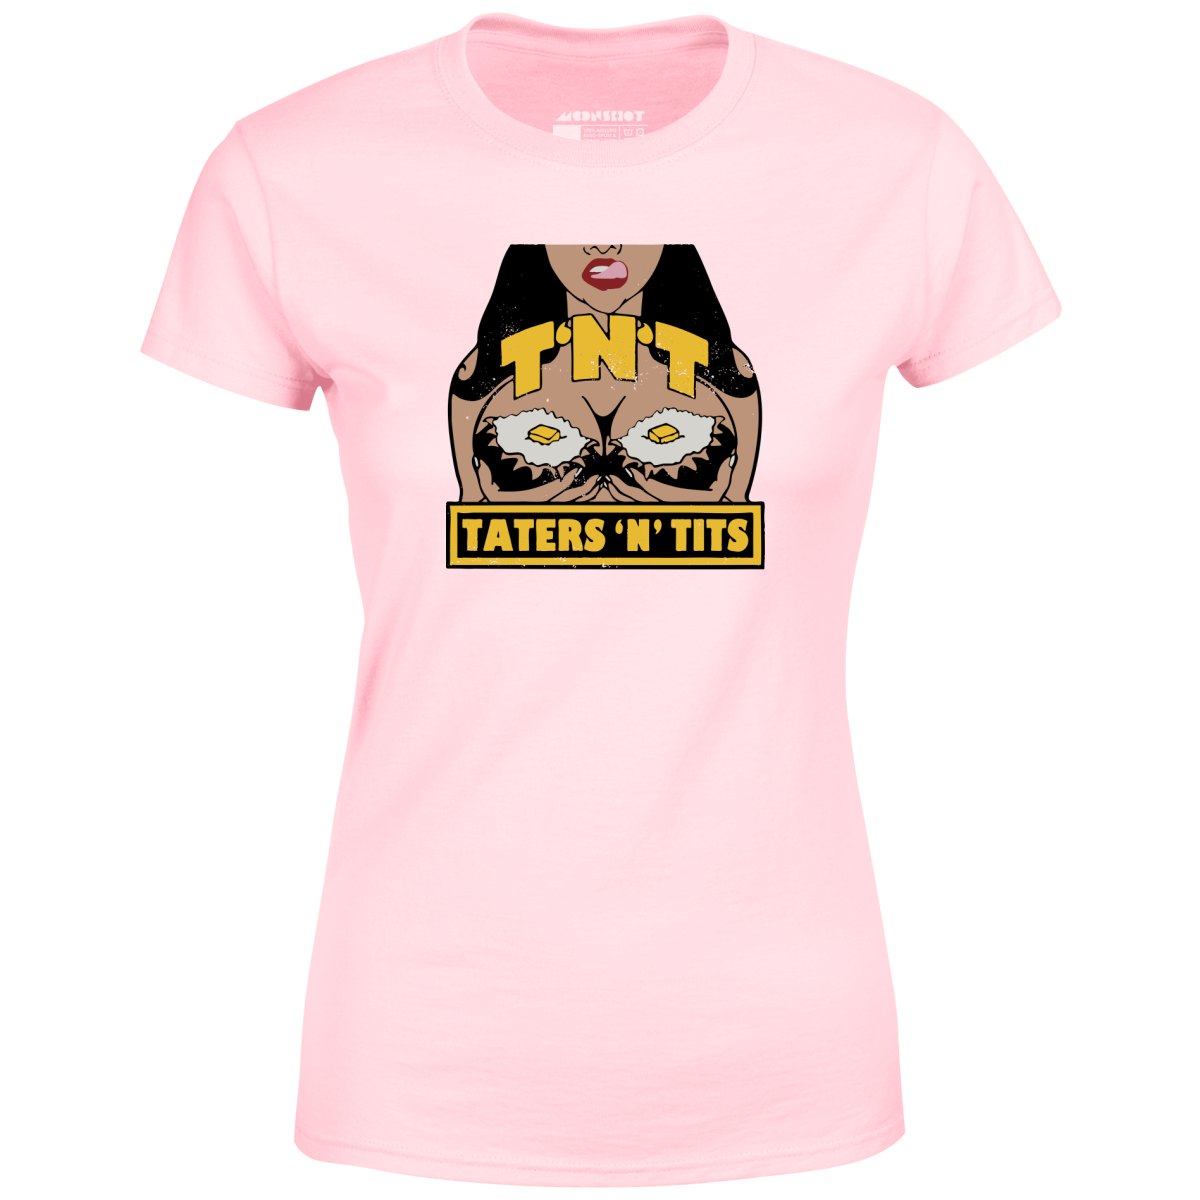 TNT Taters 'n Tits - Women's T-Shirt